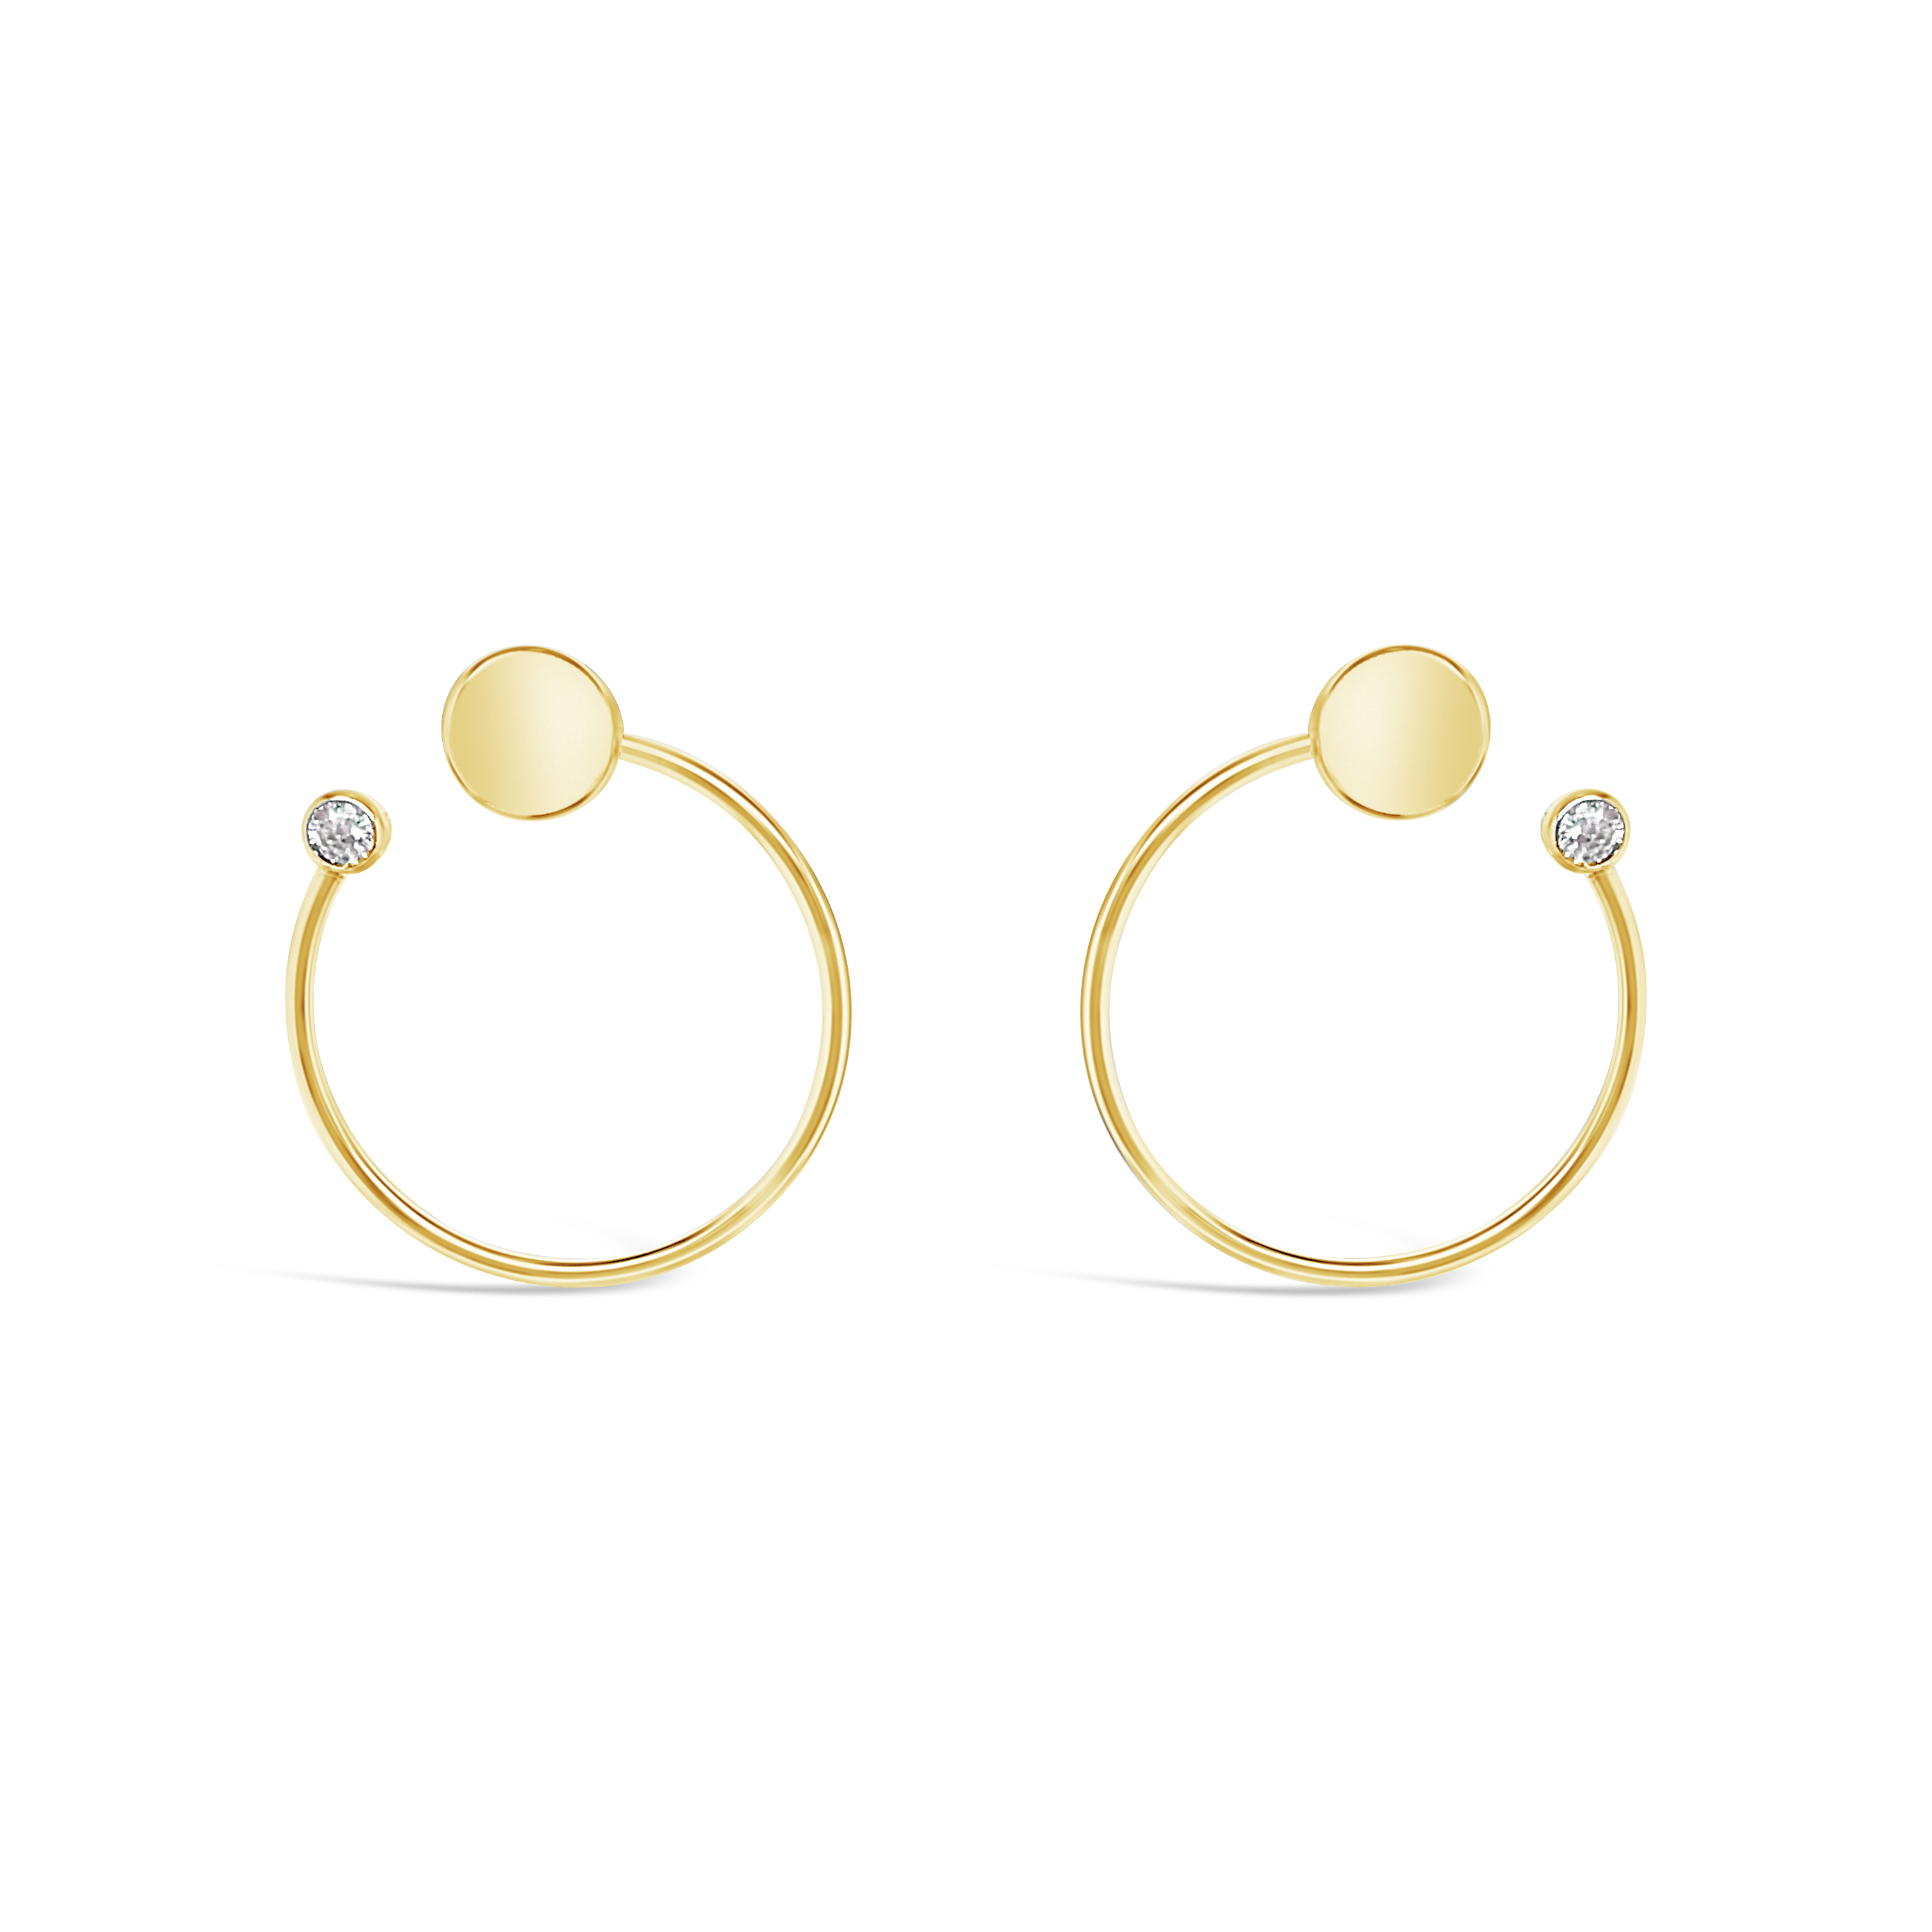 Geometric Spheres gold earrings